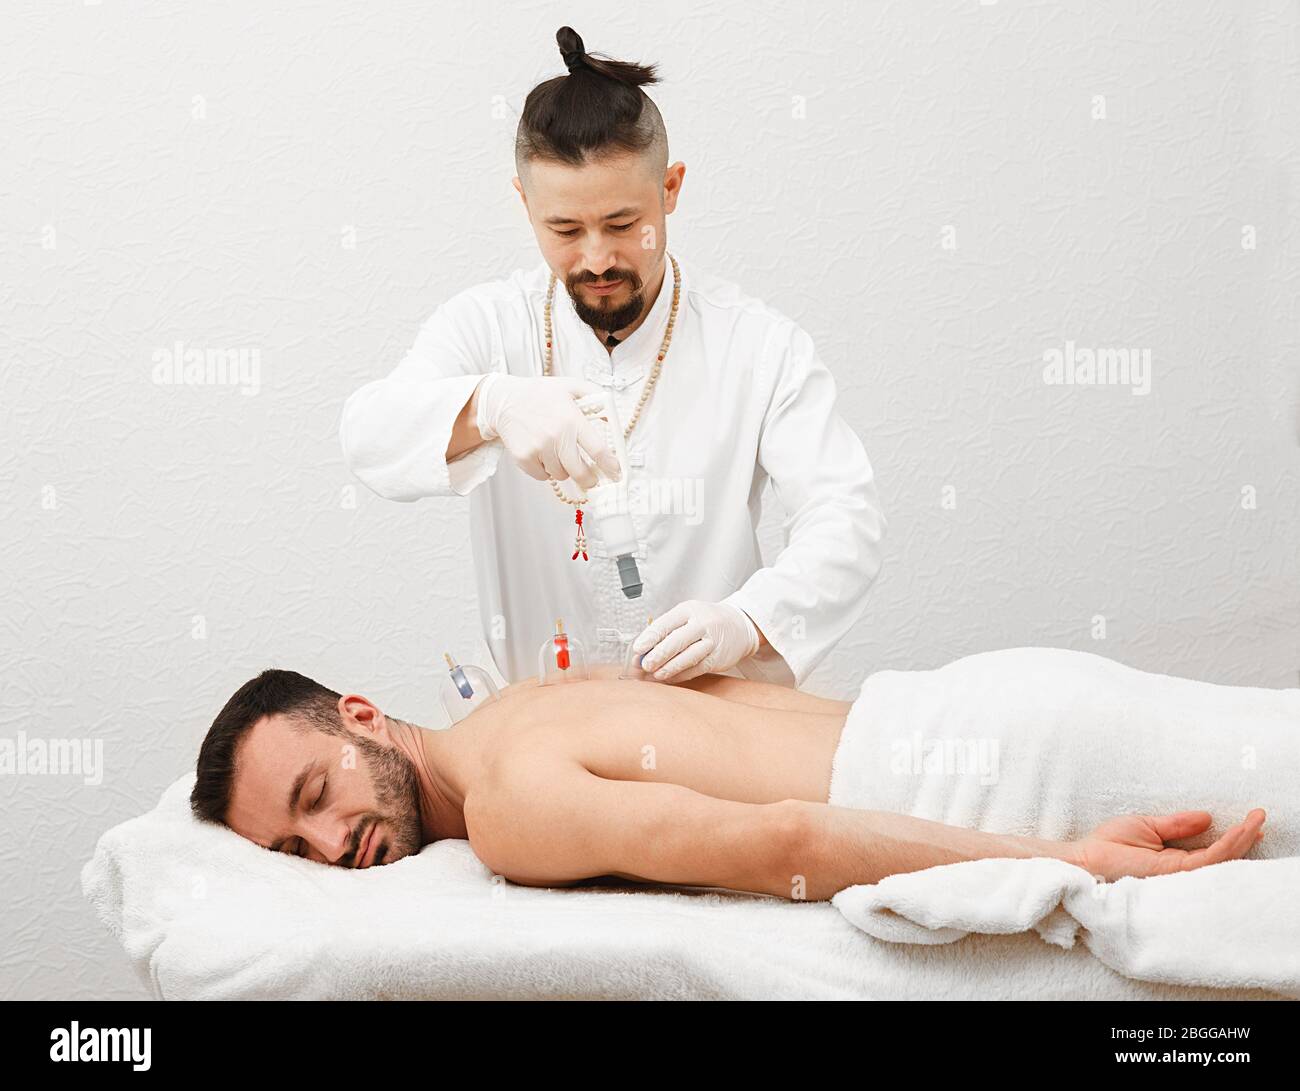 Traditionelle chinesische Medizin Arzt tun Massage mit Vakuumbechern, um männliche Patienten. Gesundheit Erholung Mann mit Vakuumsaugern. Stockfoto